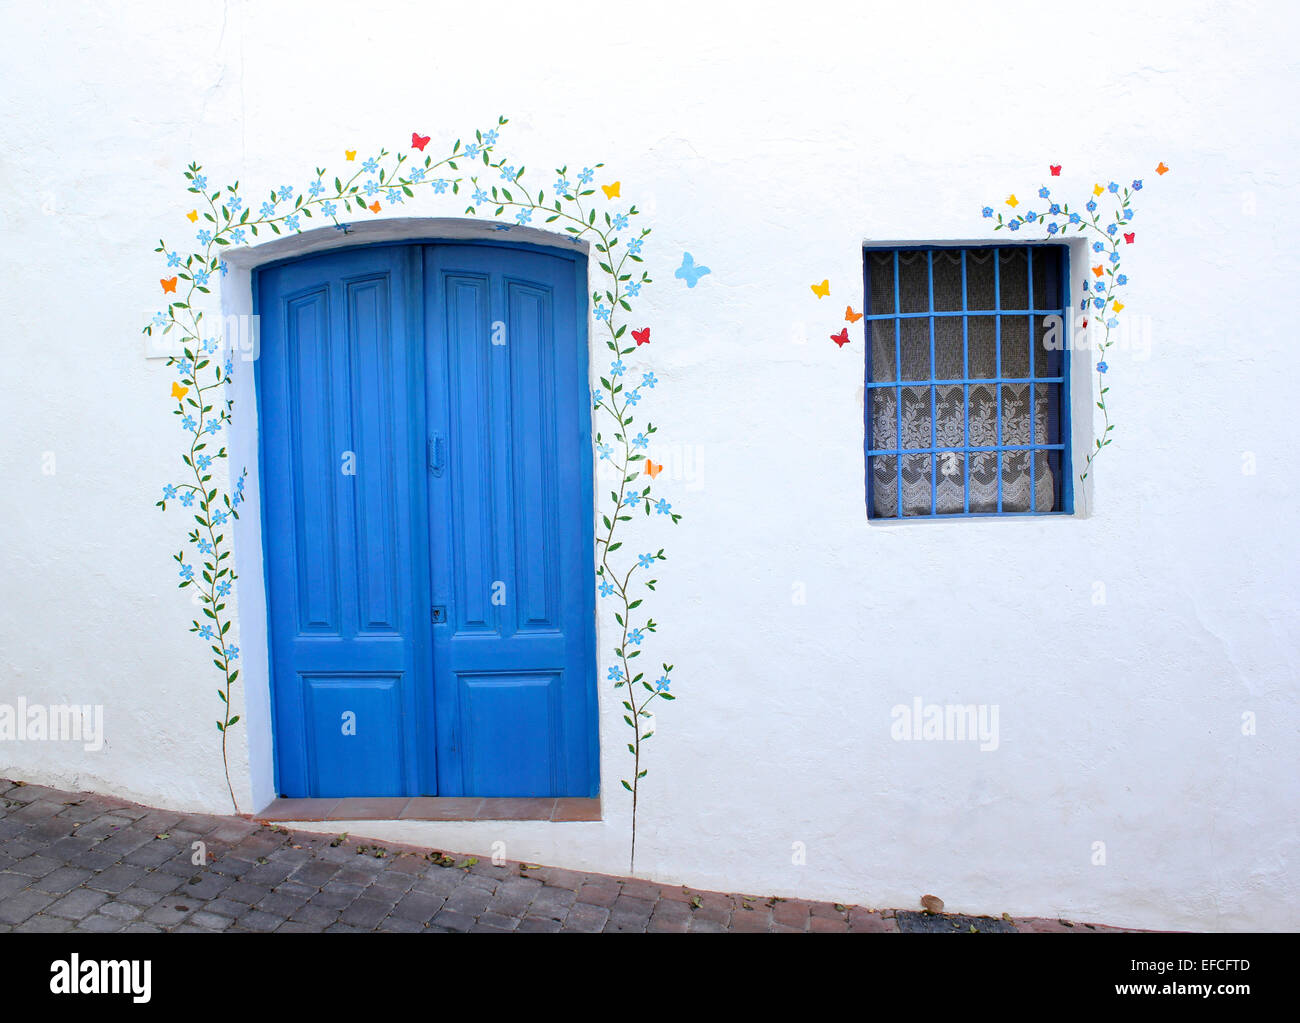 Une porte bleu peint de couleurs vives et fenêtre décorée de la murale d'un trailing plantes et fleurs sur un mur blanchi à la chaux Banque D'Images